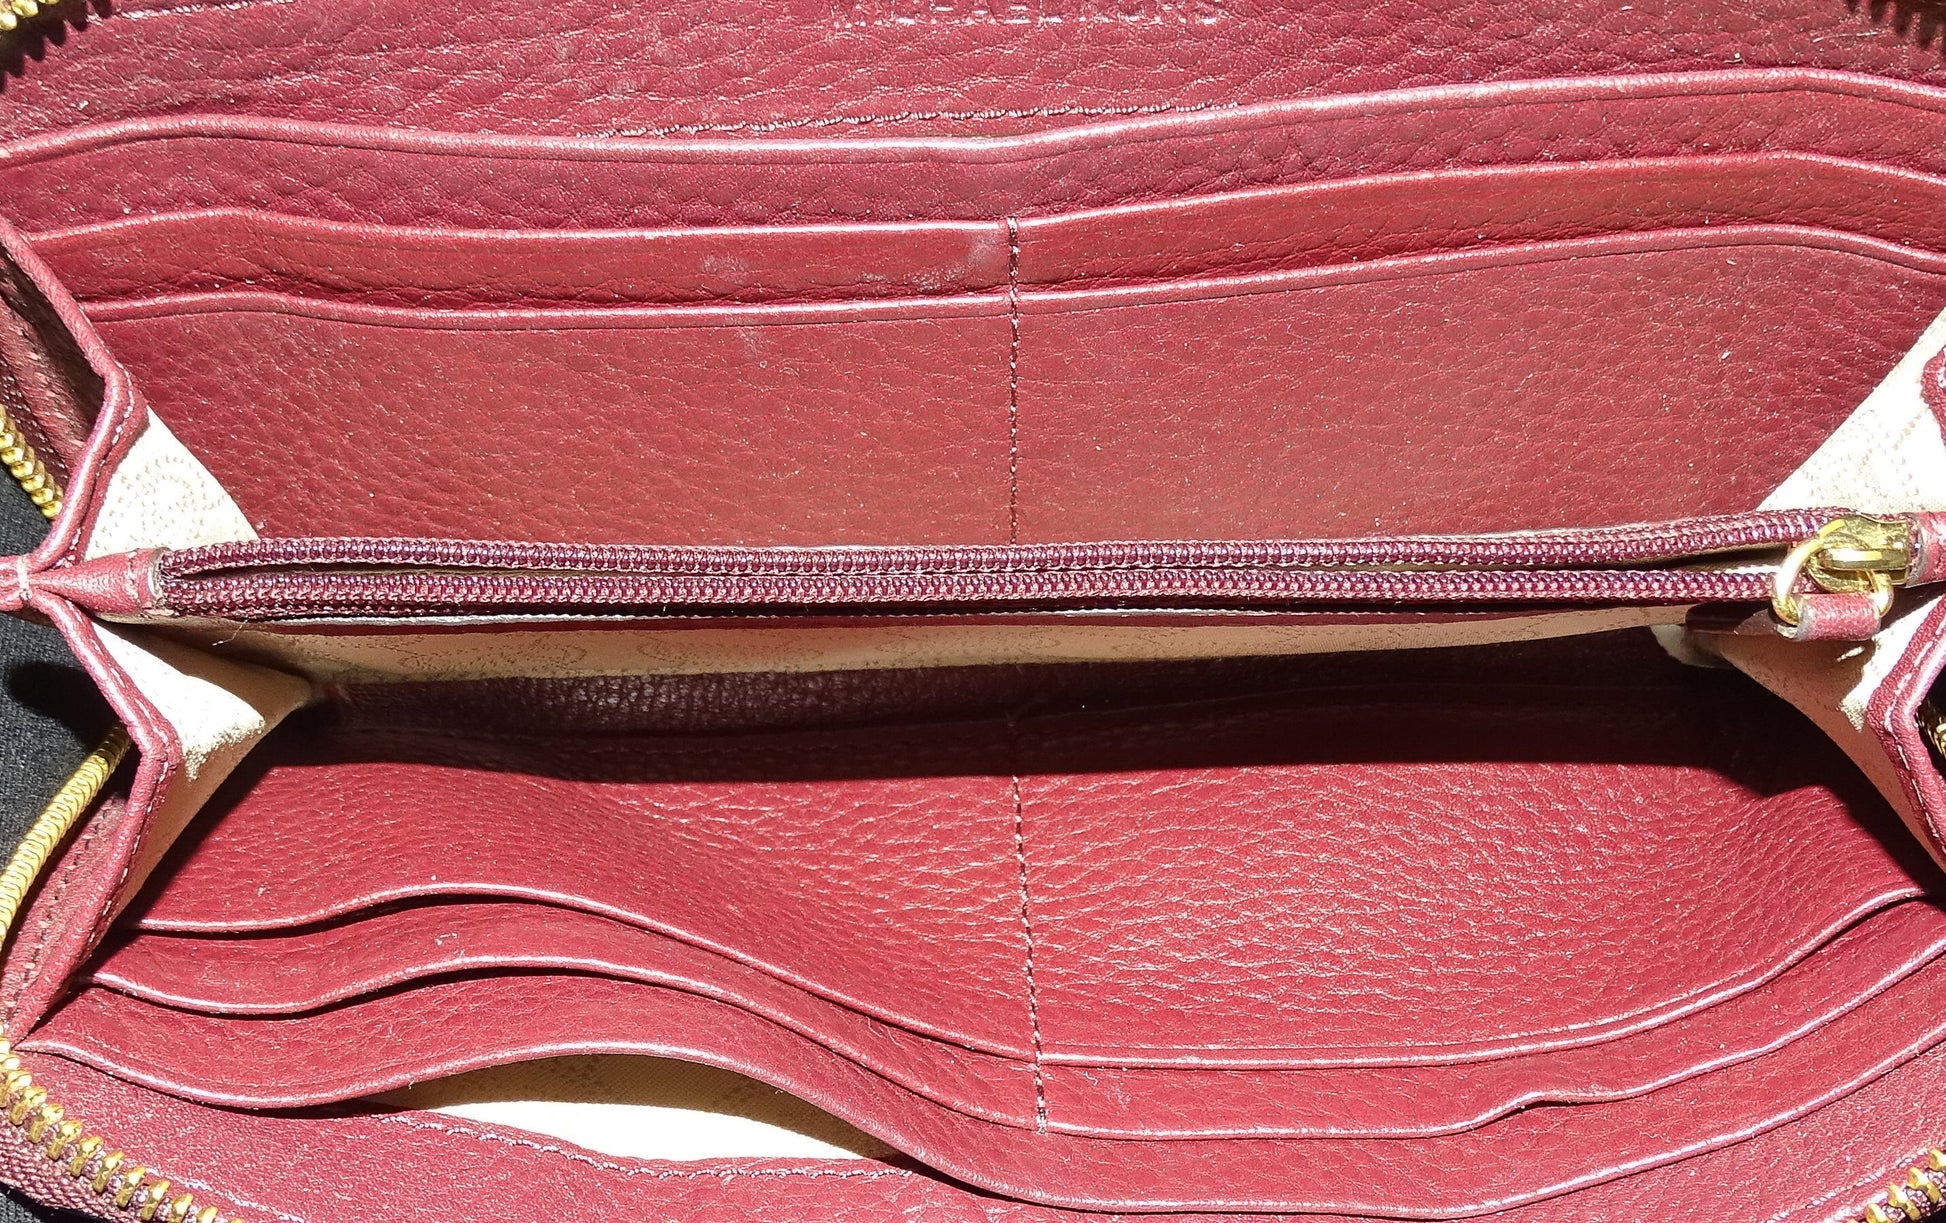 Michael Kors Purple Grained Leather Long Zip Wallet – Designer Exchange Ltd